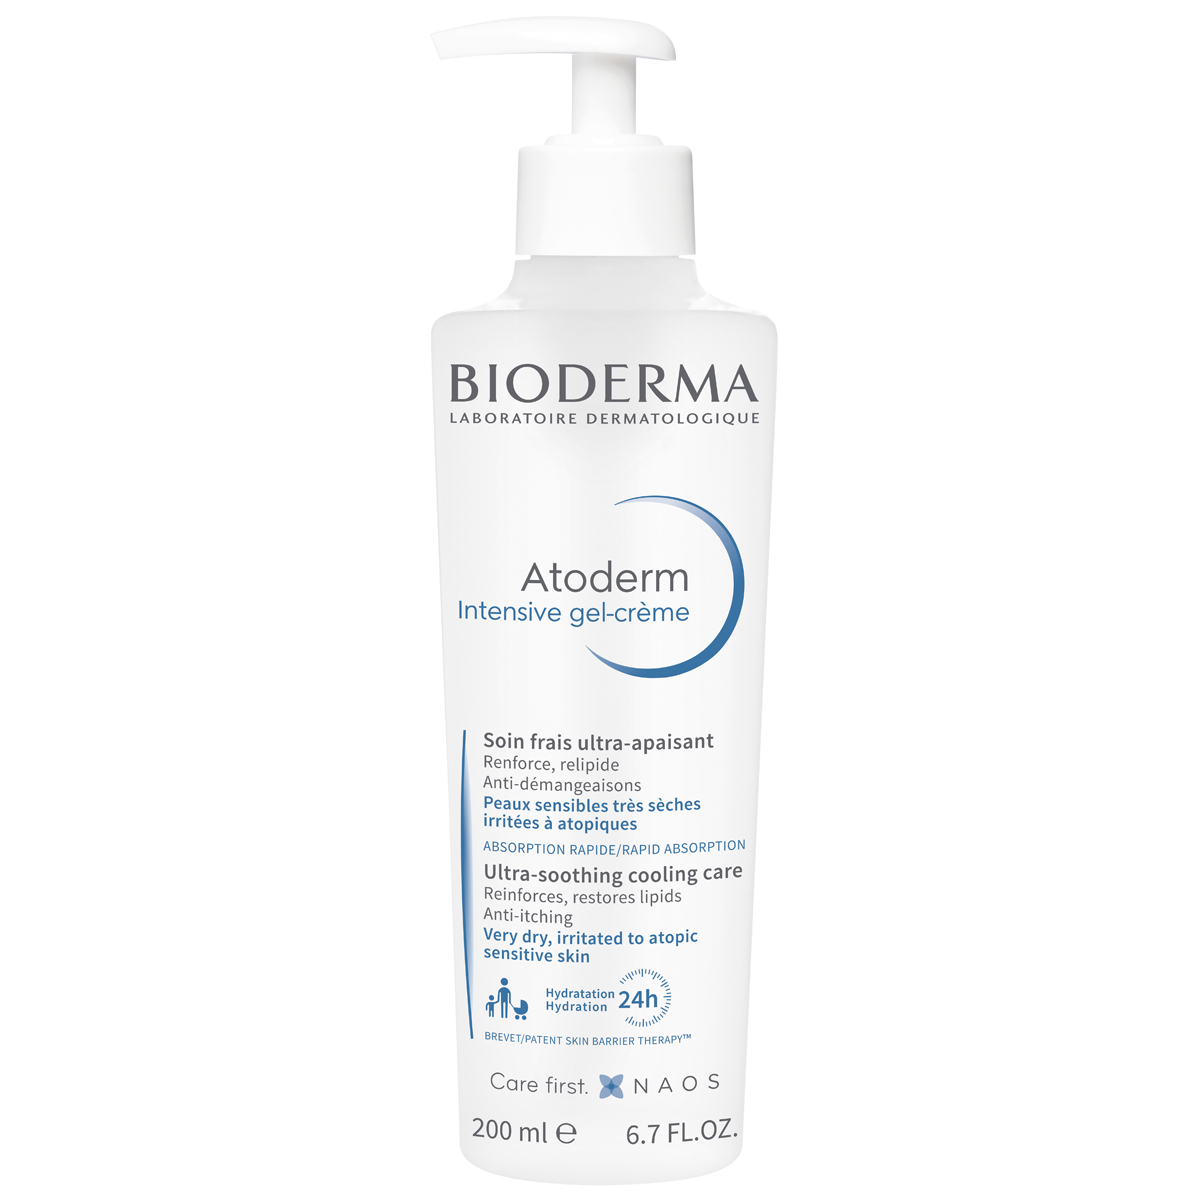 Bioderma Гель-крем Интенсив, 200 мл (Bioderma, Atoderm) уход за телом bioderma бальзам для восстановления сухой и атопичной кожи лица и тела atoderm